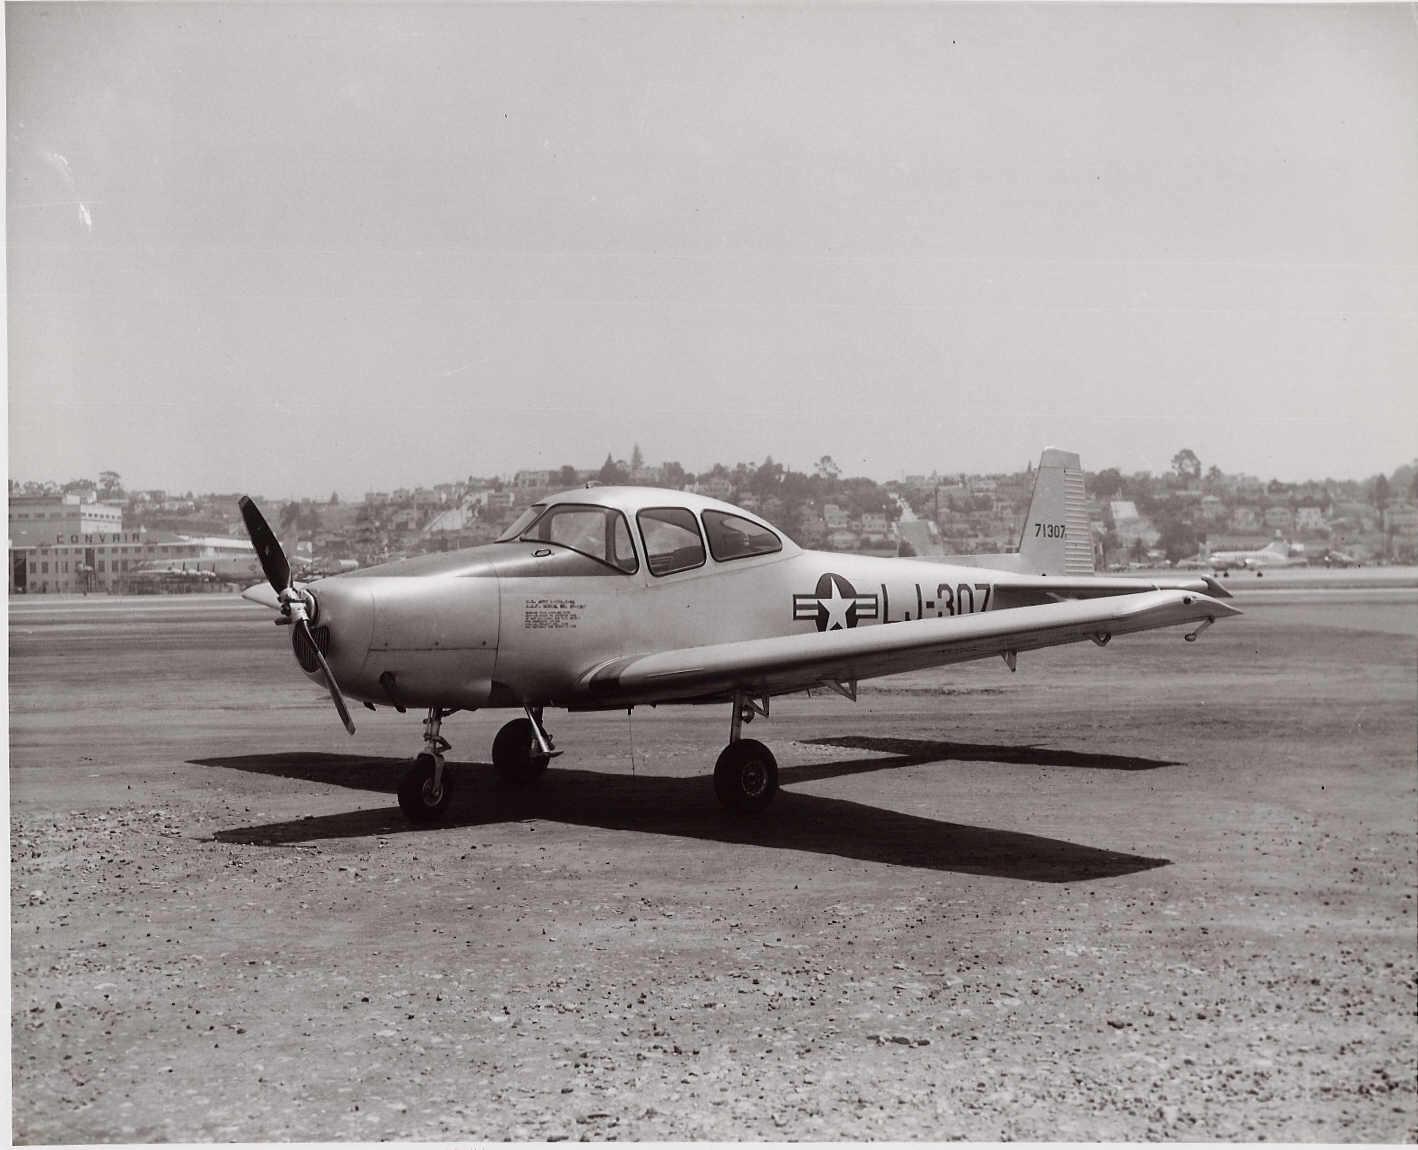 L-17 aircraft